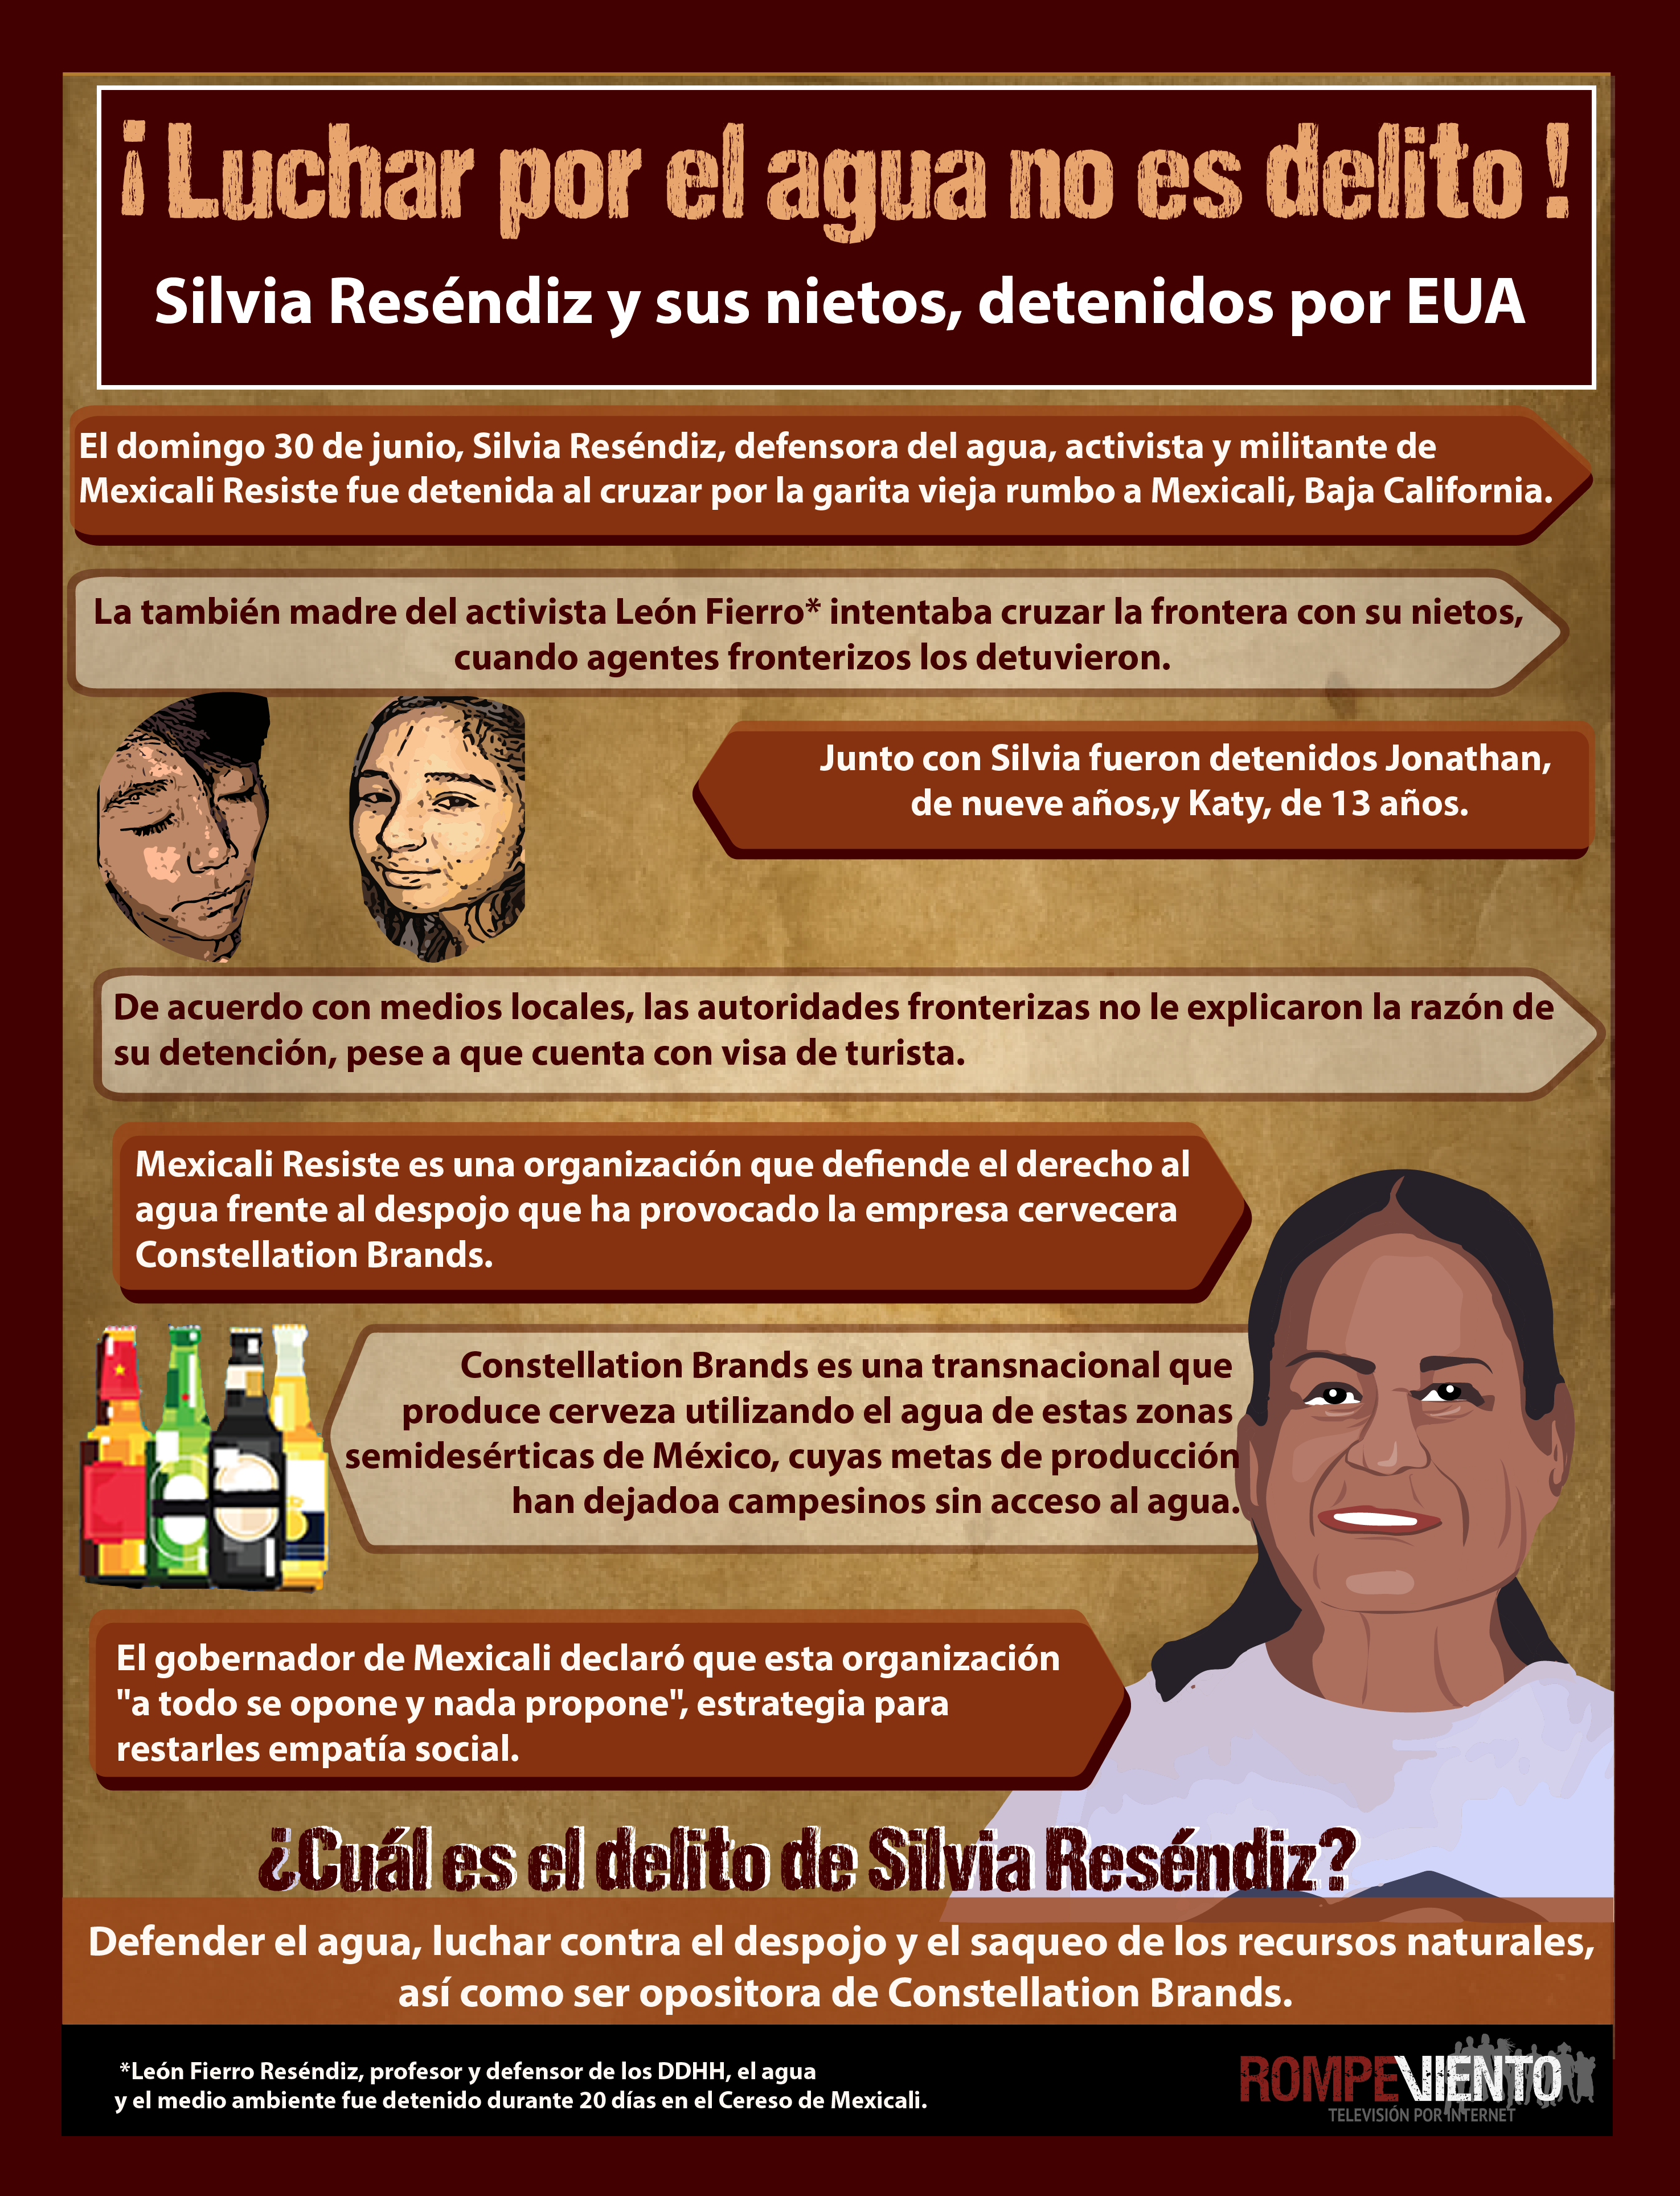 Luchar por el agua no es delito - Silvia Reséndiz y sus nietos detenidos por EUA